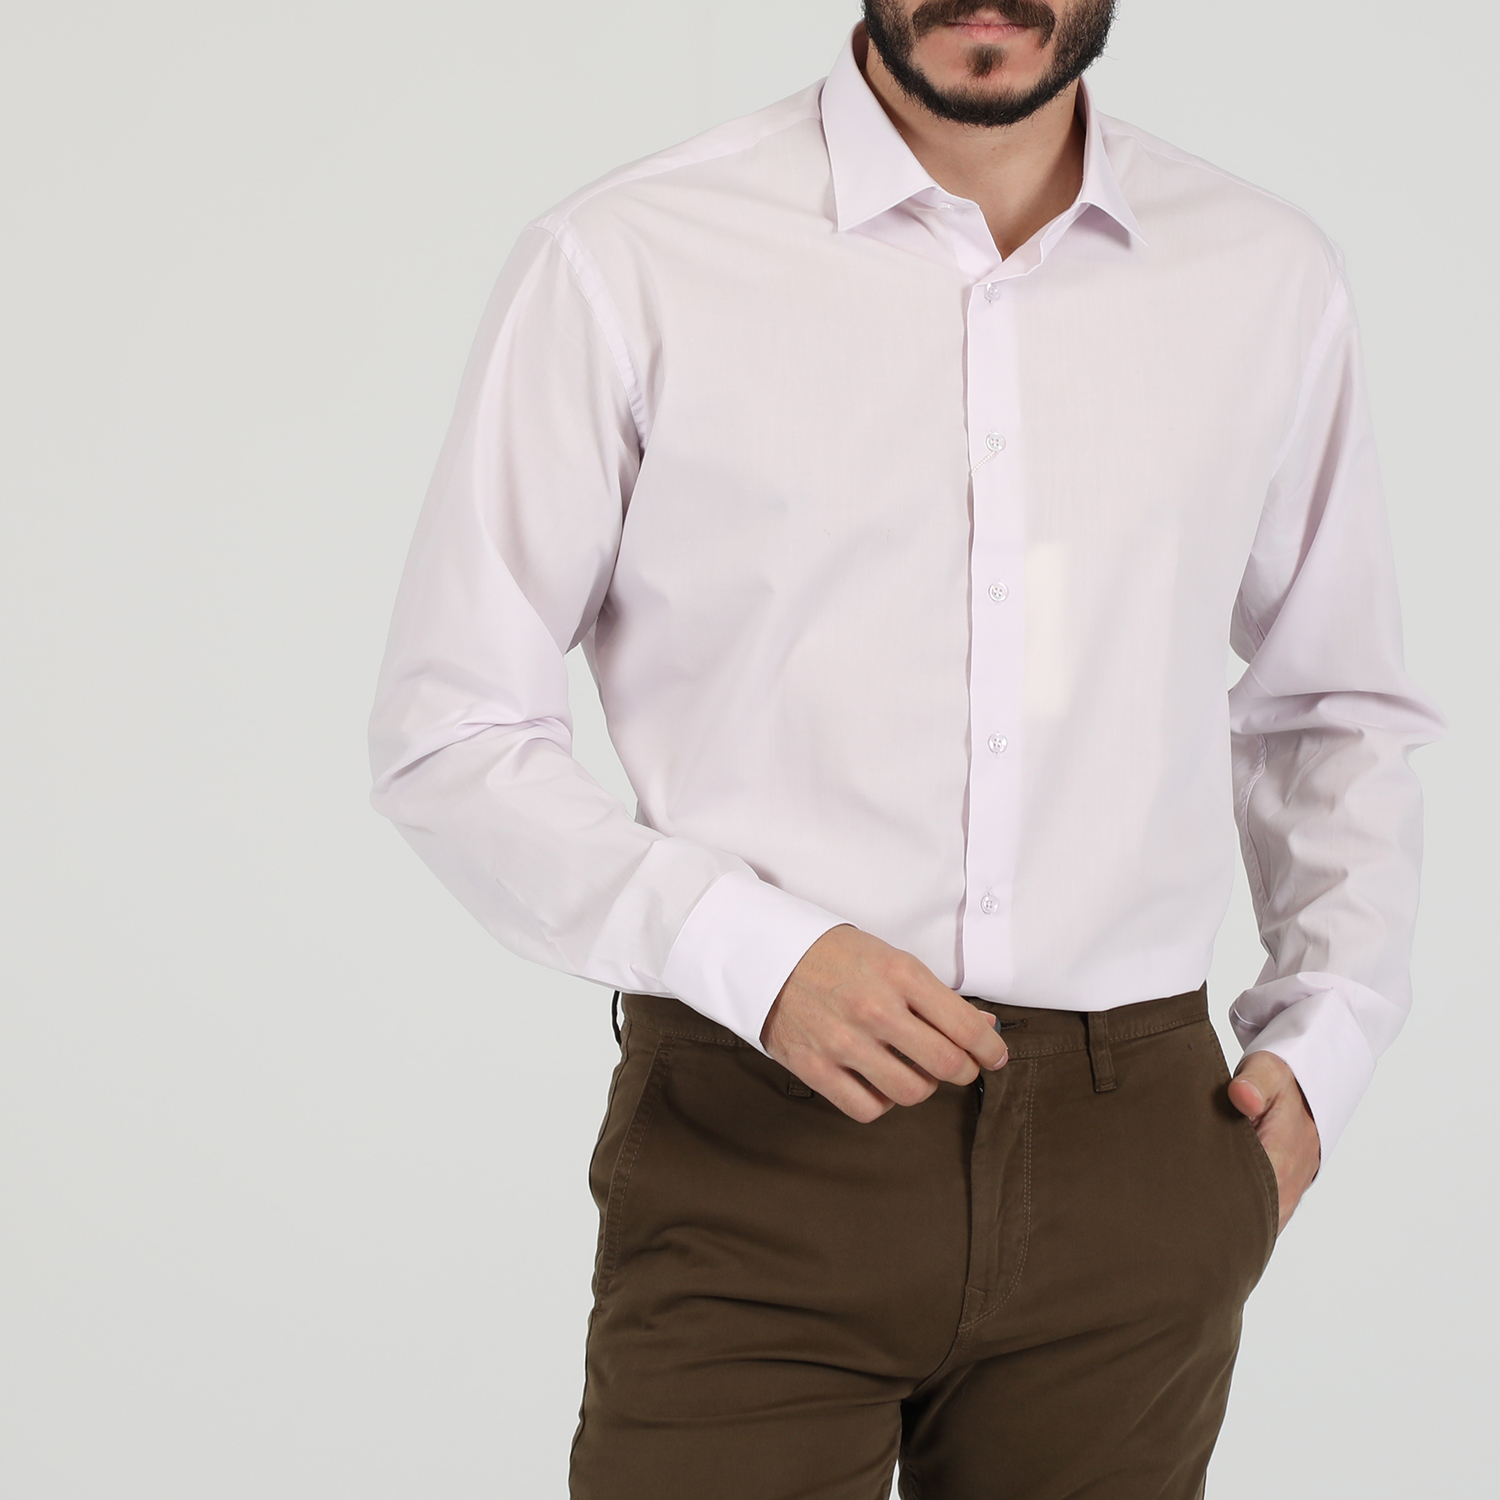 Ανδρικά/Ρούχα/Πουκάμισα/Μακρυμάνικα MARTIN & CO - Ανδρικό πουκάμισο MARTIN & CO Regular Fit ροζ